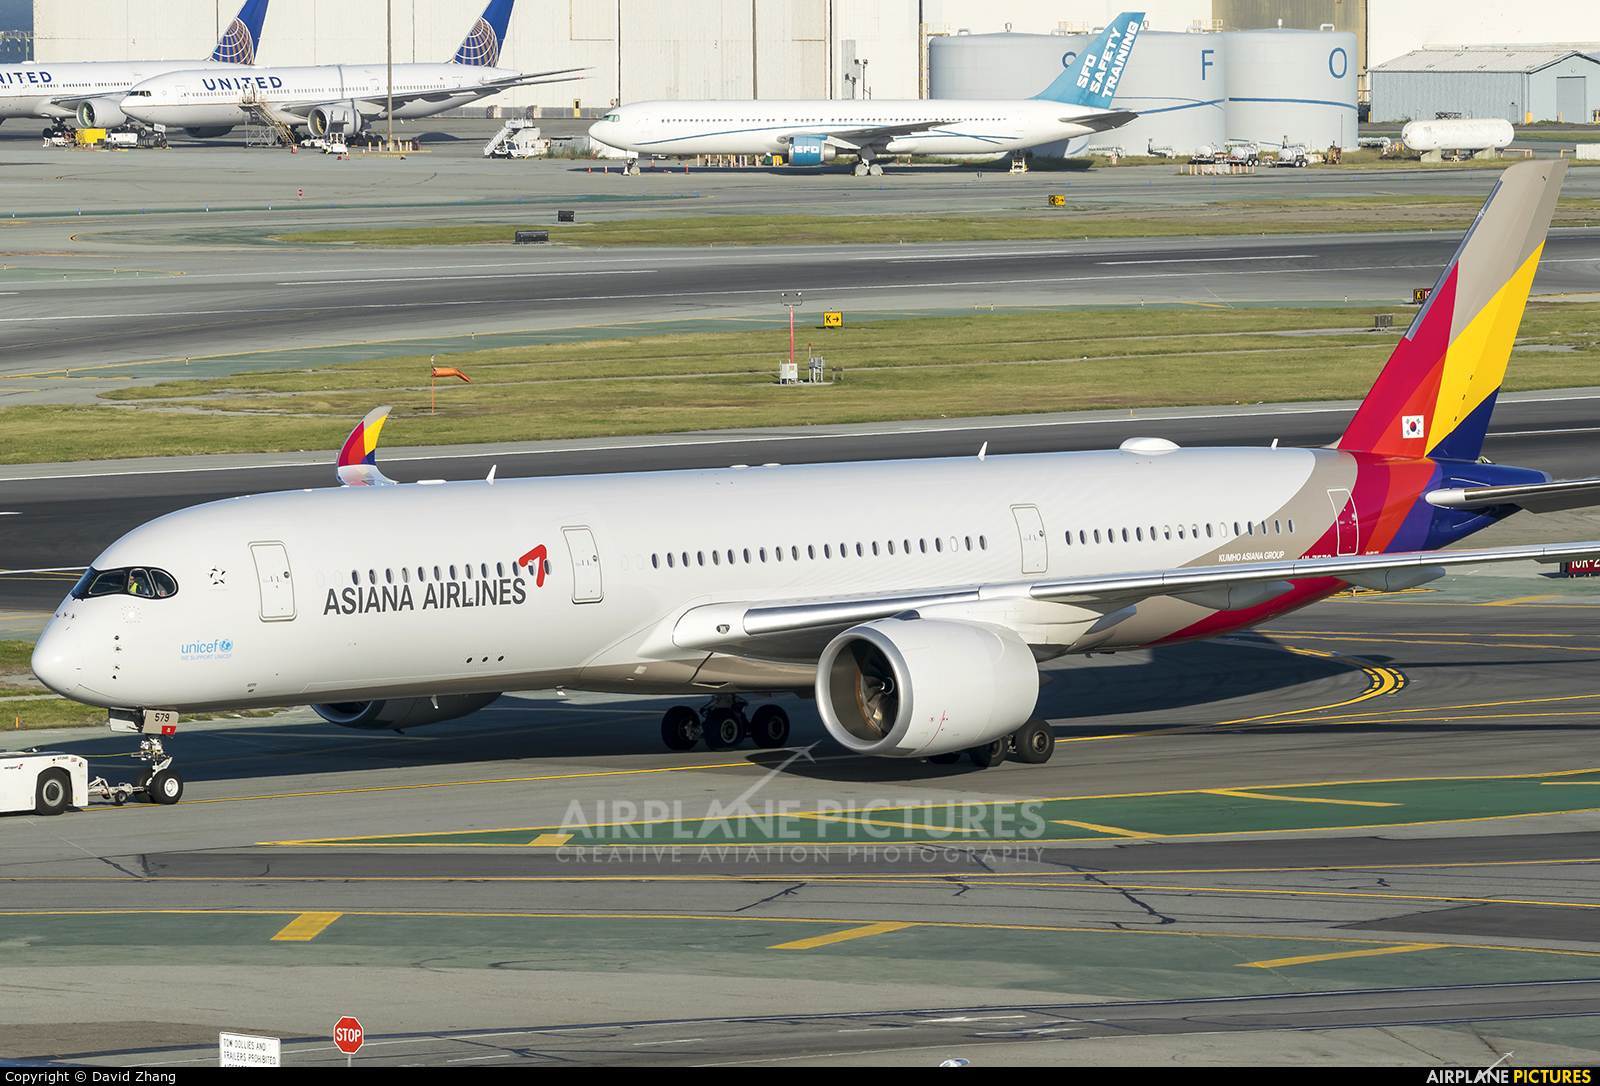 Asiana Airlines HL7579 aircraft at San Francisco Intl